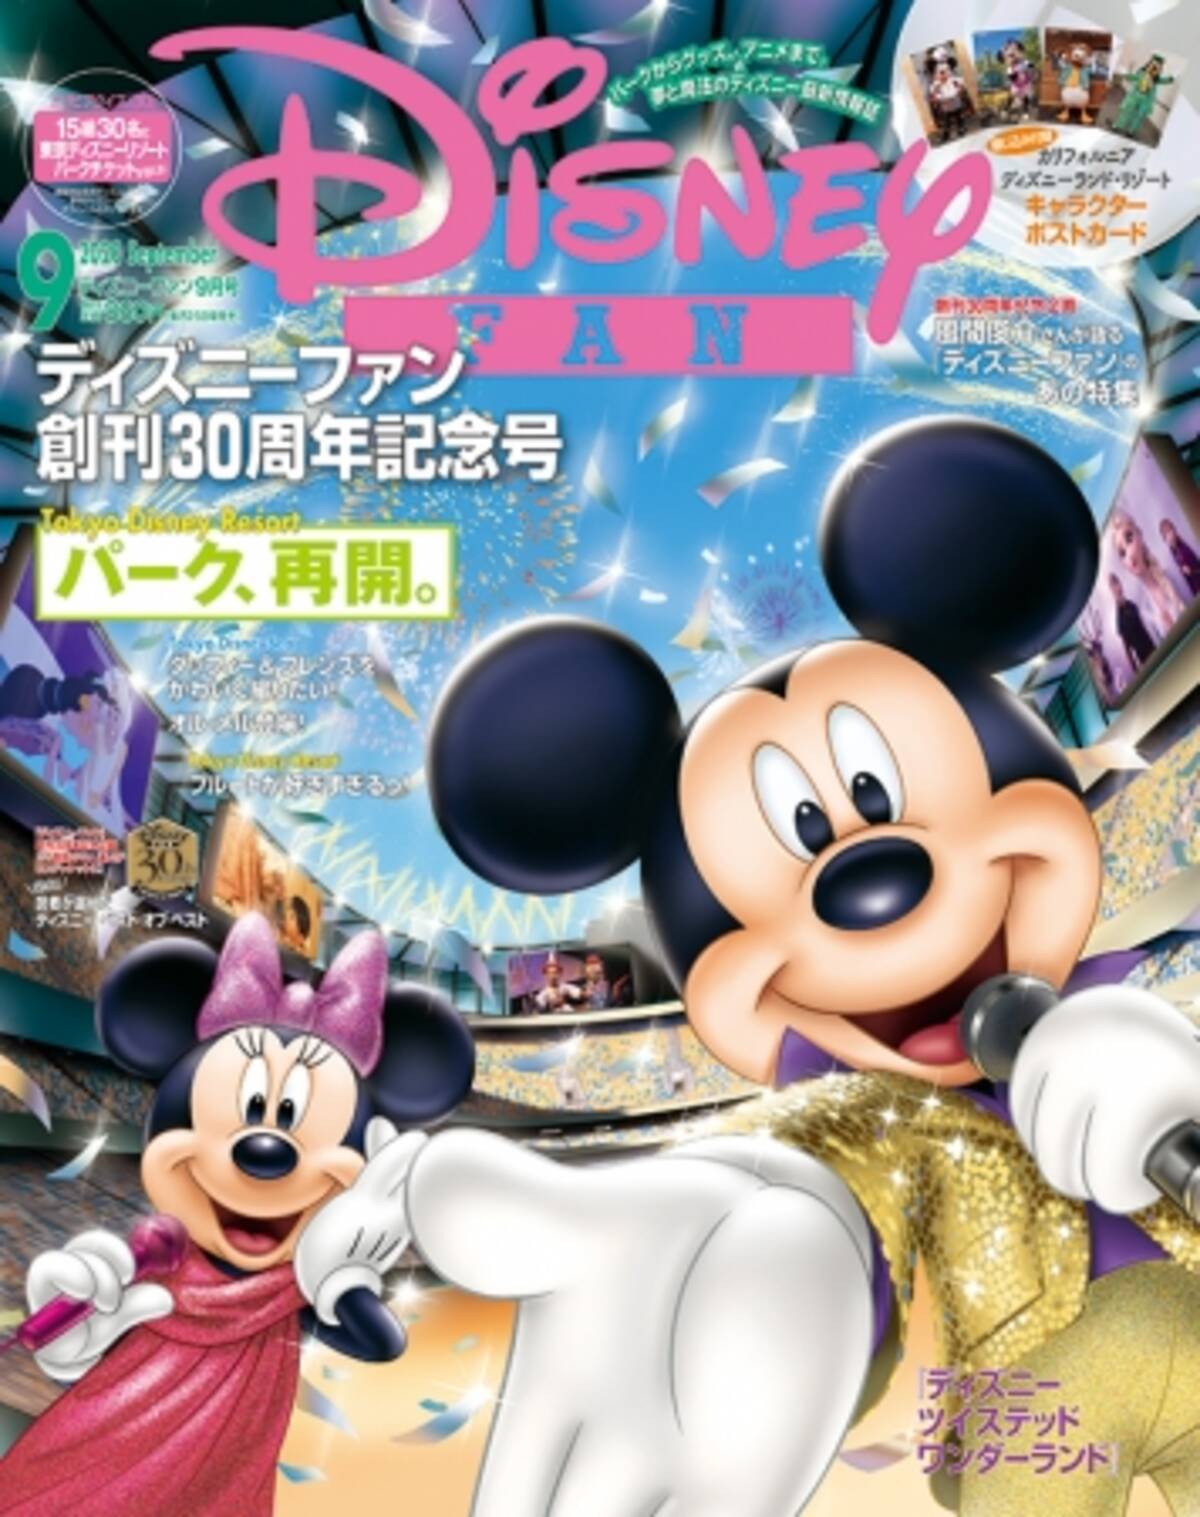 ディズニーファン 創刊30周年記念 トリビアクイズに答えて 東京ディズニーリゾート R チケットが当たる パーク再開の特集も掲載の9月号は7月27日発売 年7月27日 エキサイトニュース